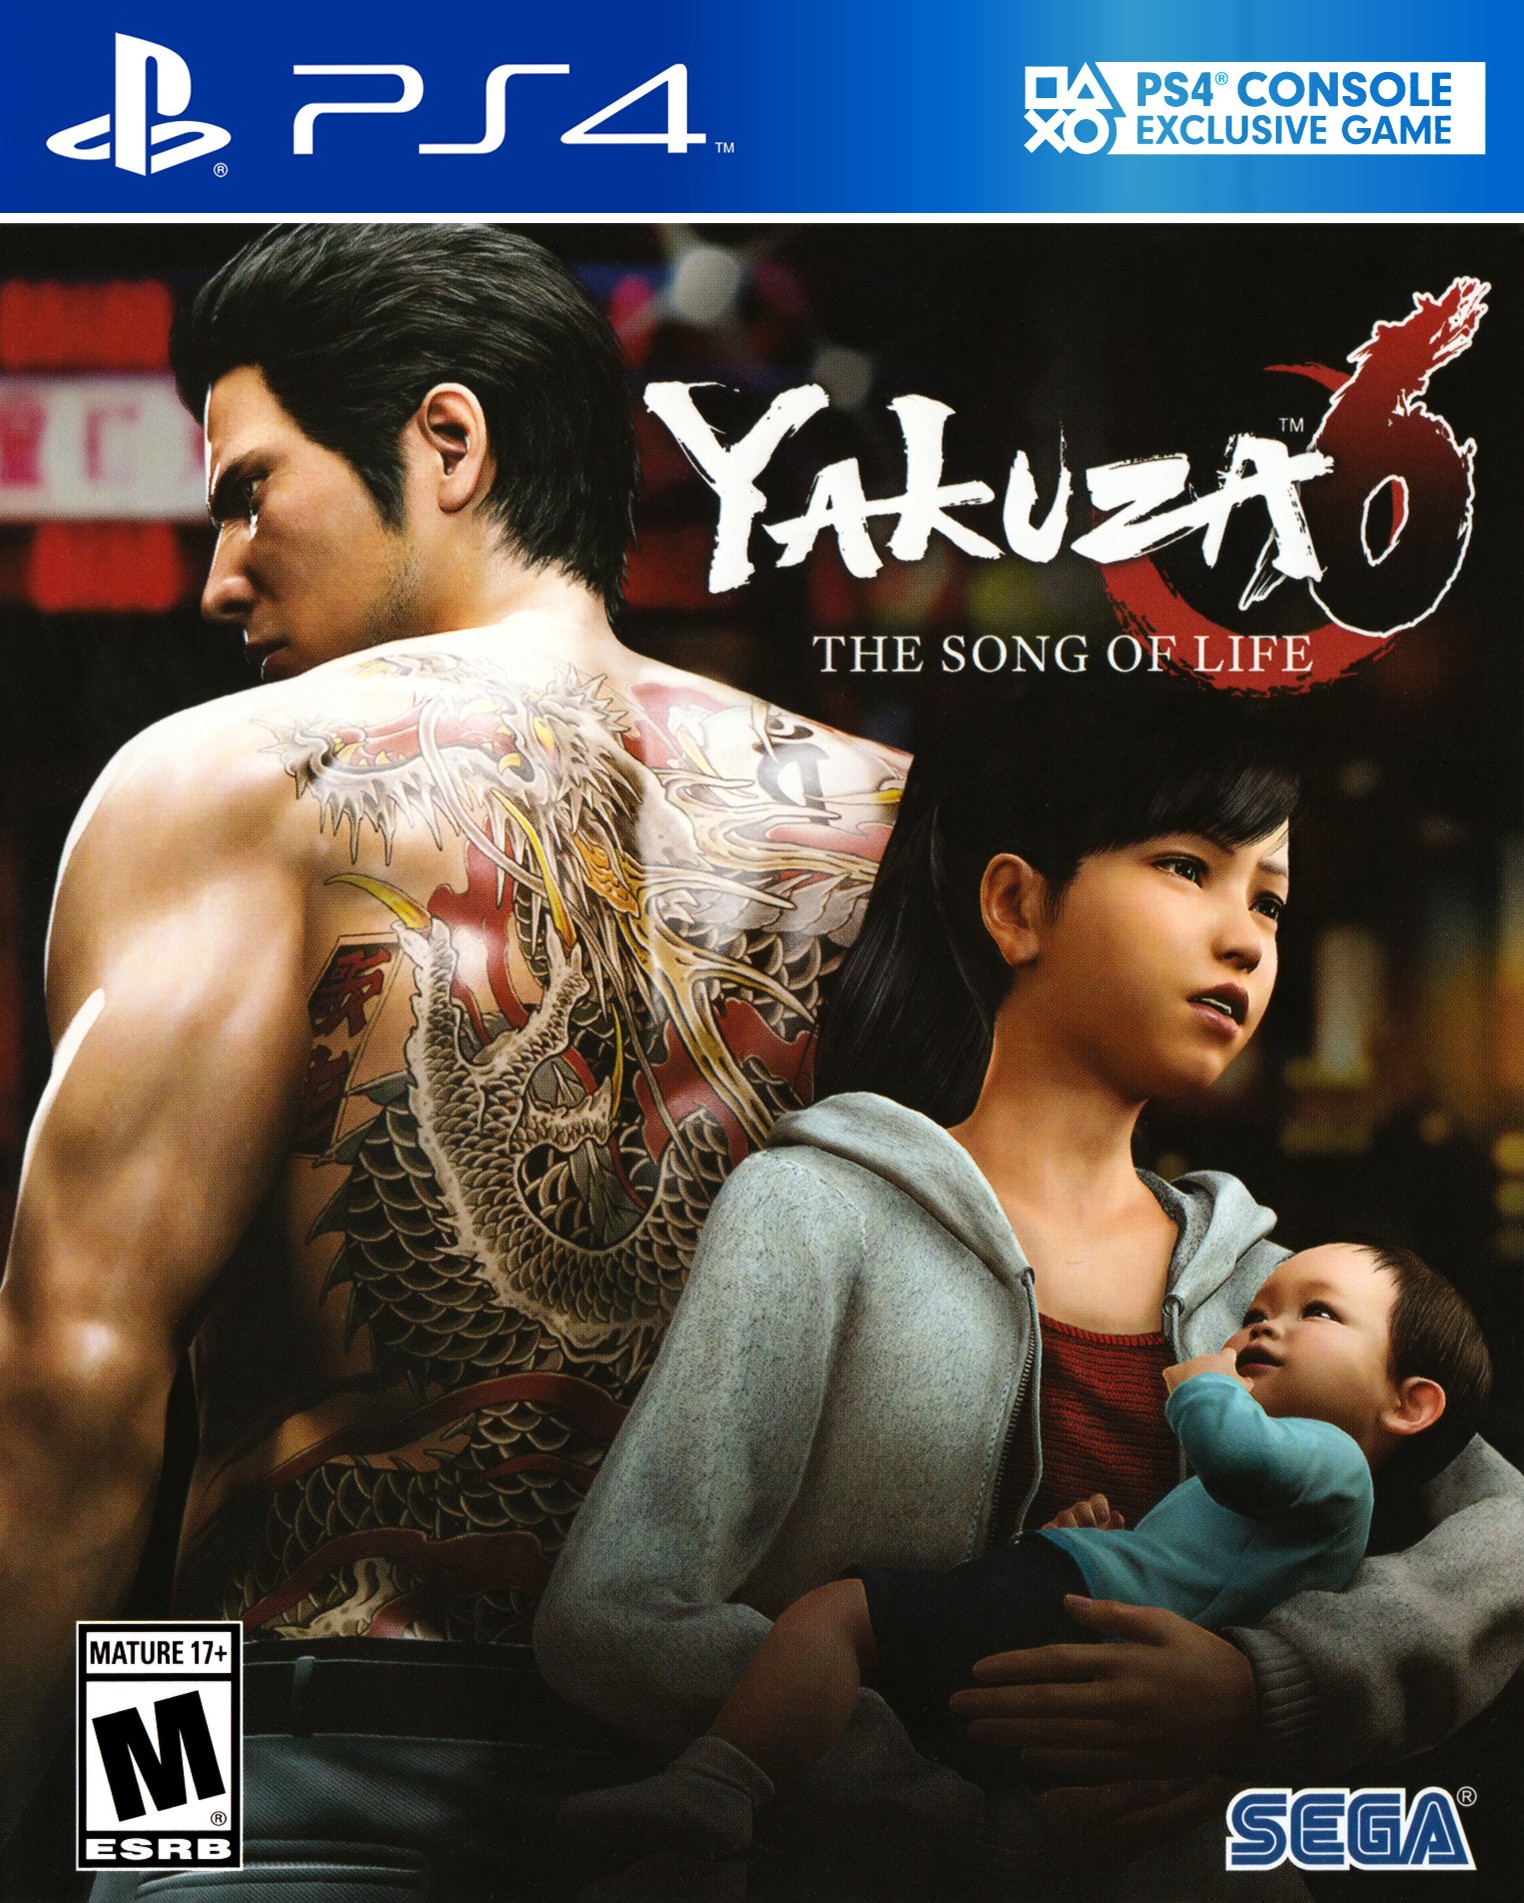 'Yakuza 6: The Song of Life'